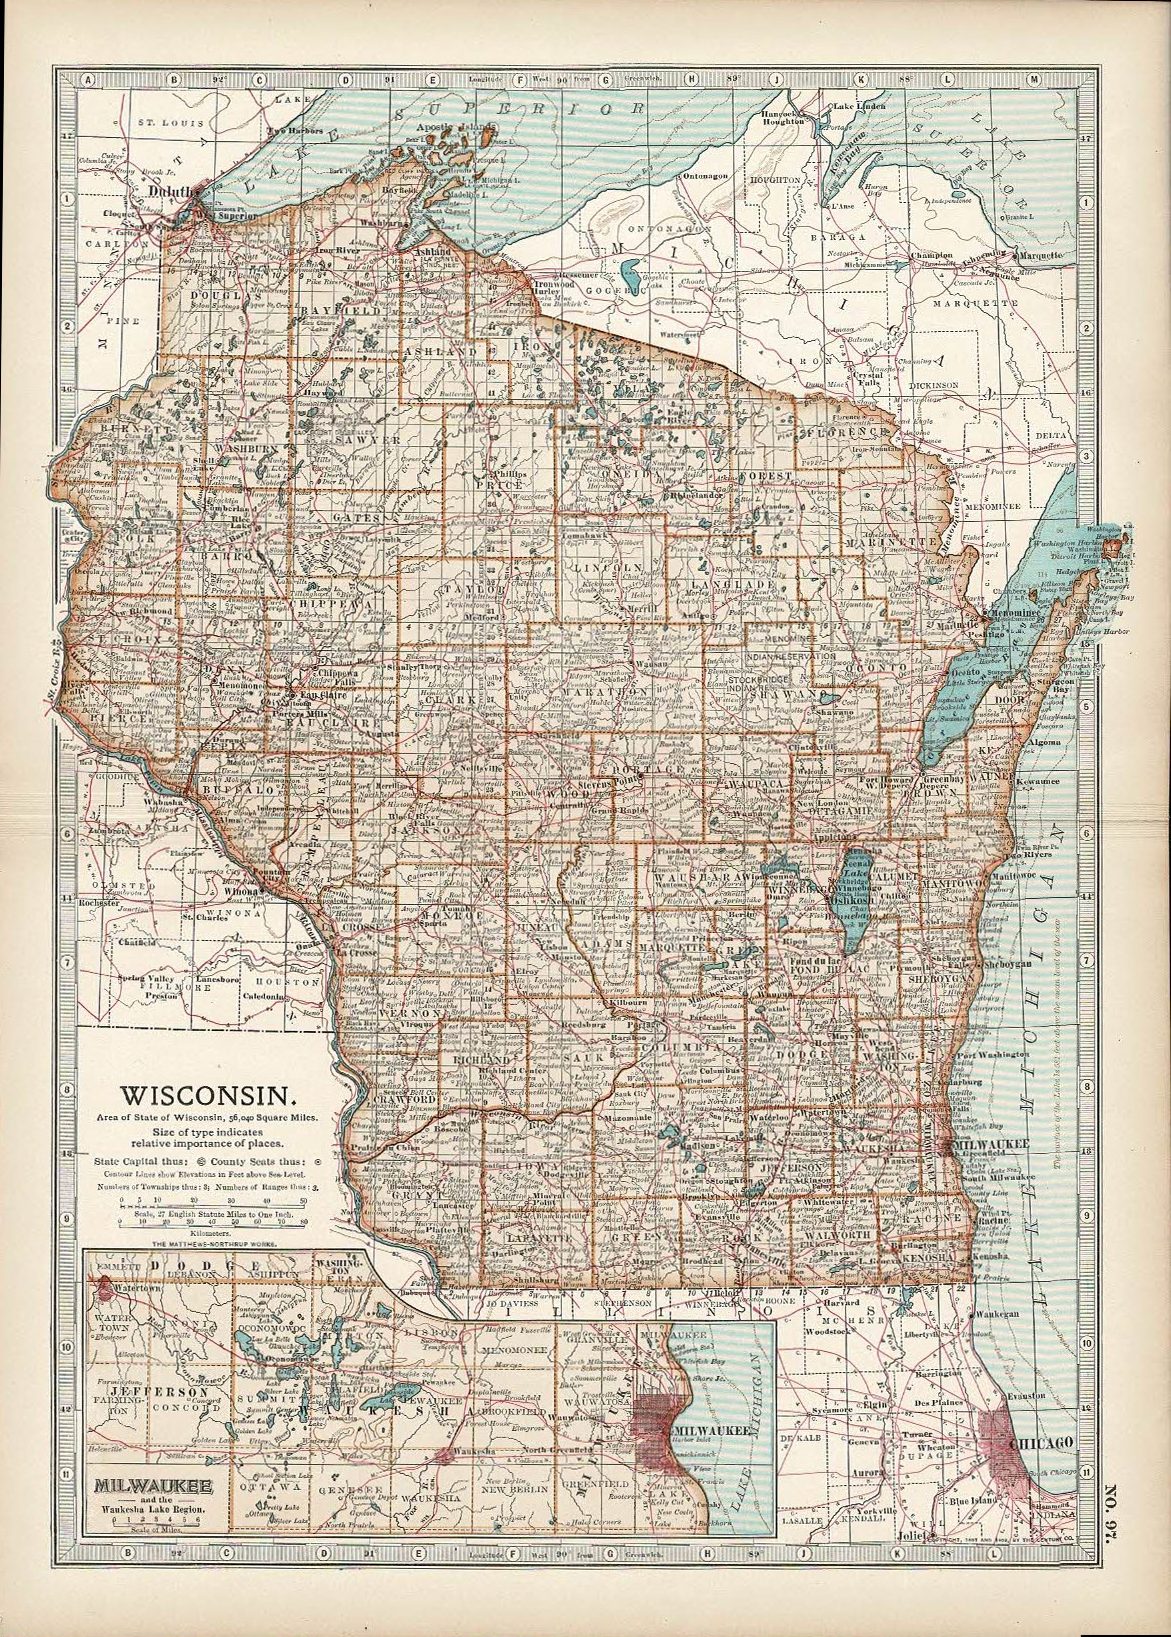 Wisconsin antique map Encyclopaedia Britannica 1903